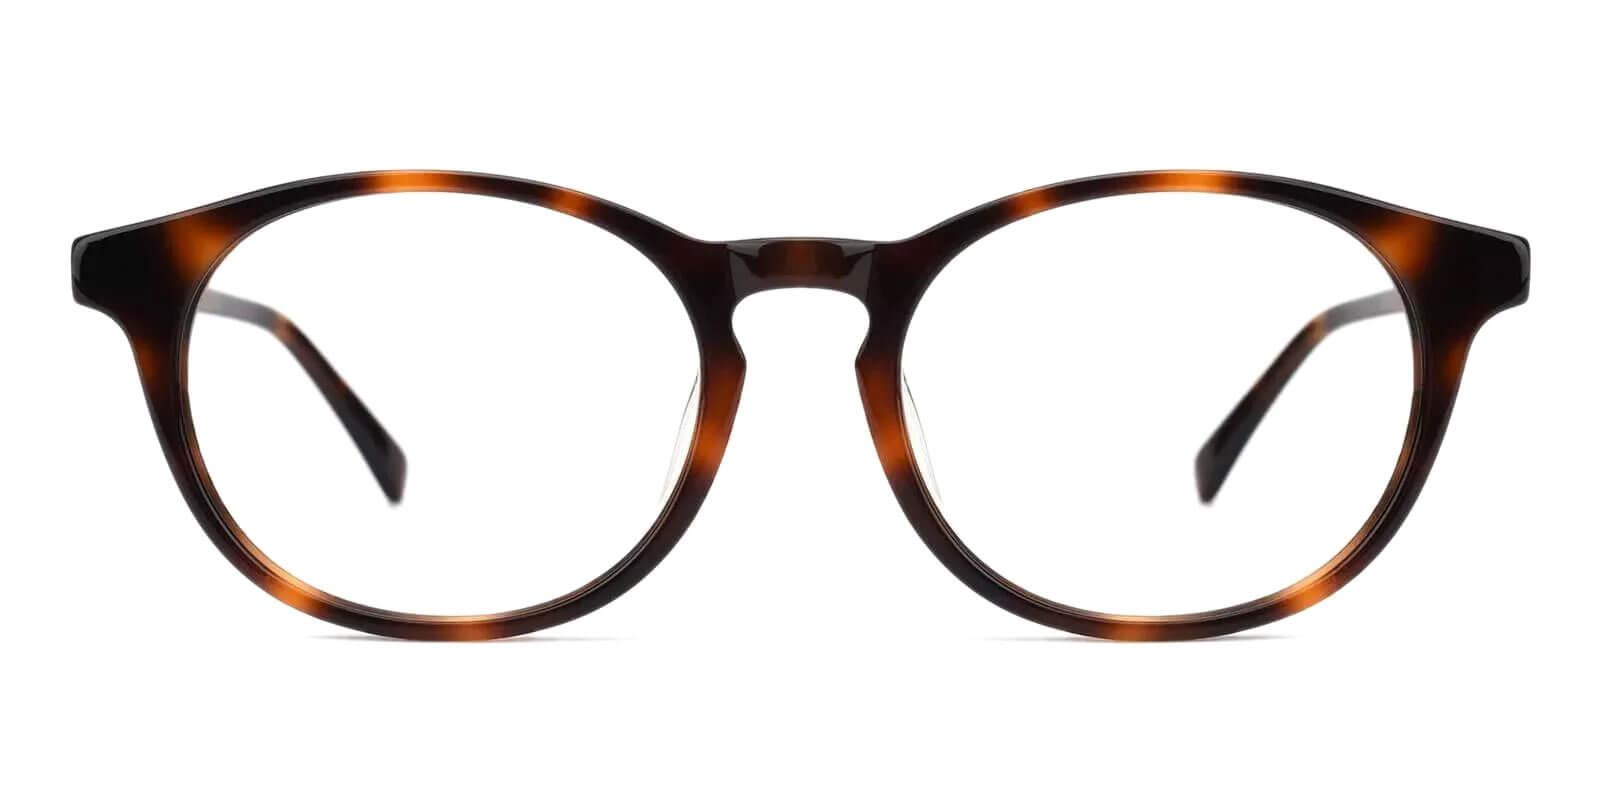 Holly Grove Tortoise Acetate Eyeglasses , UniversalBridgeFit Frames from ABBE Glasses